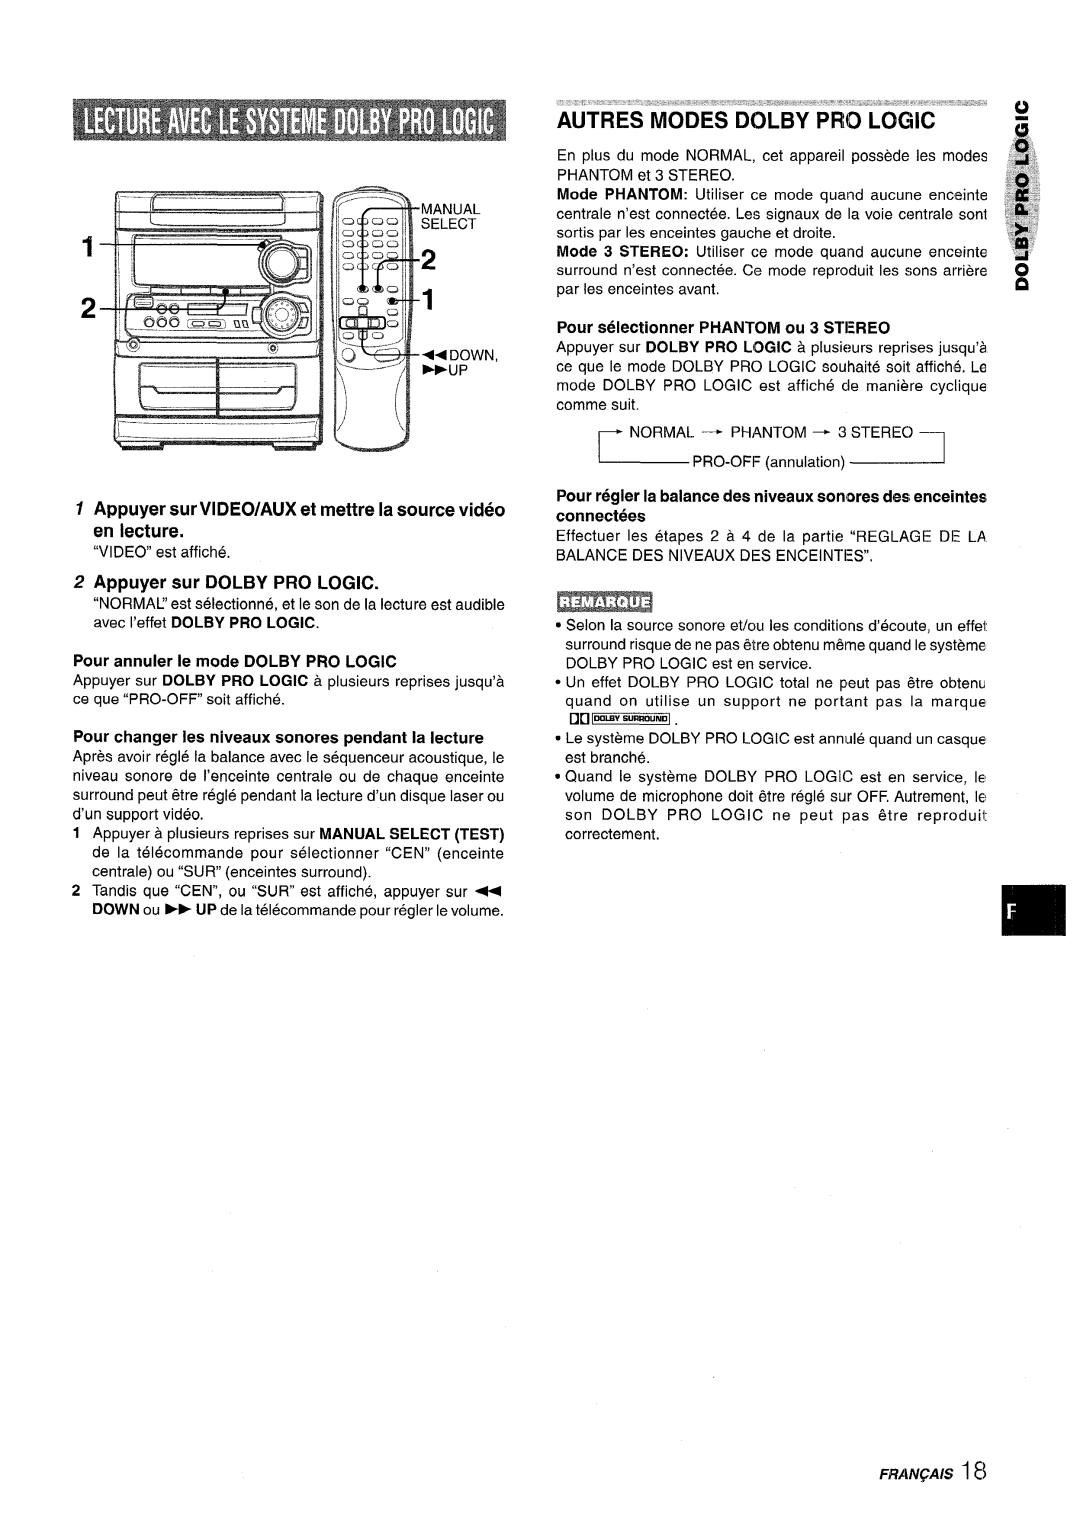 Sony SX-MT321, NSX-MT320 manual Appuyer sur DOLBY PRO LOGIC, Pour selectionner PHANTOM ou 3 STEREO, FRANQAIS i 